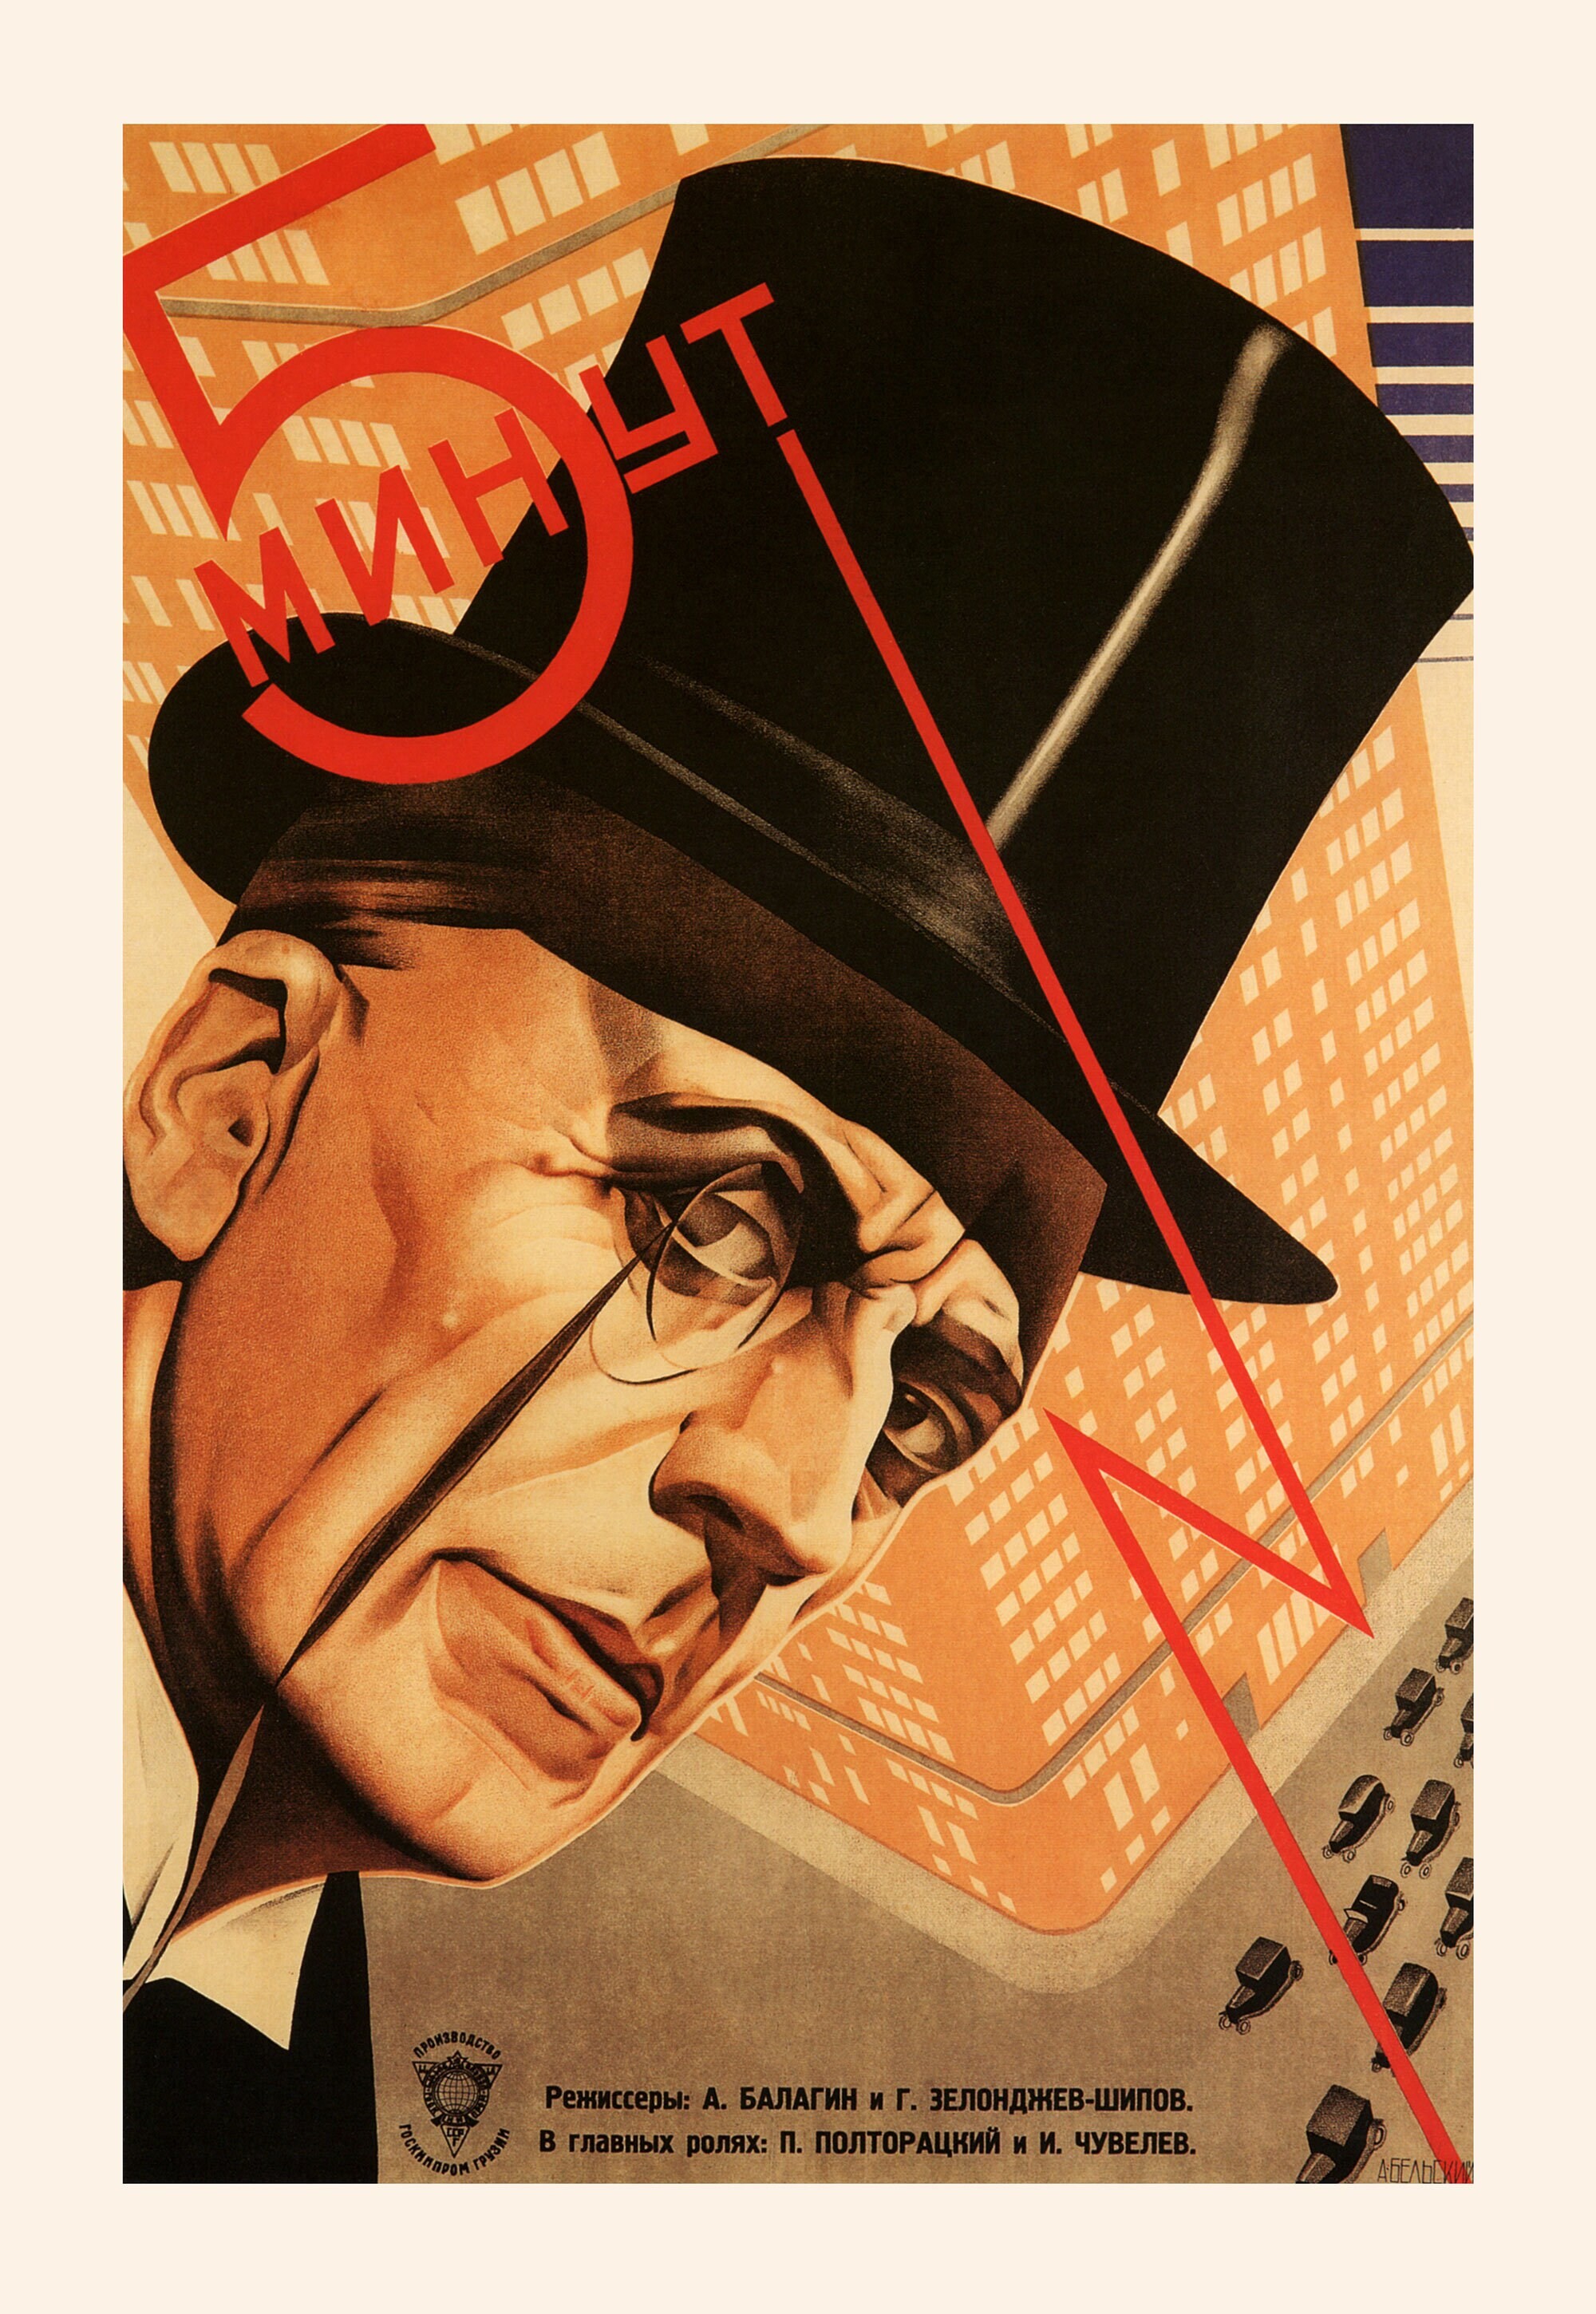 5 минут, 1929 год, режиссёр А. Балагин, плакат к фильму, авторы Георгий и Владимир Стенберги (авангардное советское искусство, 1920-е)